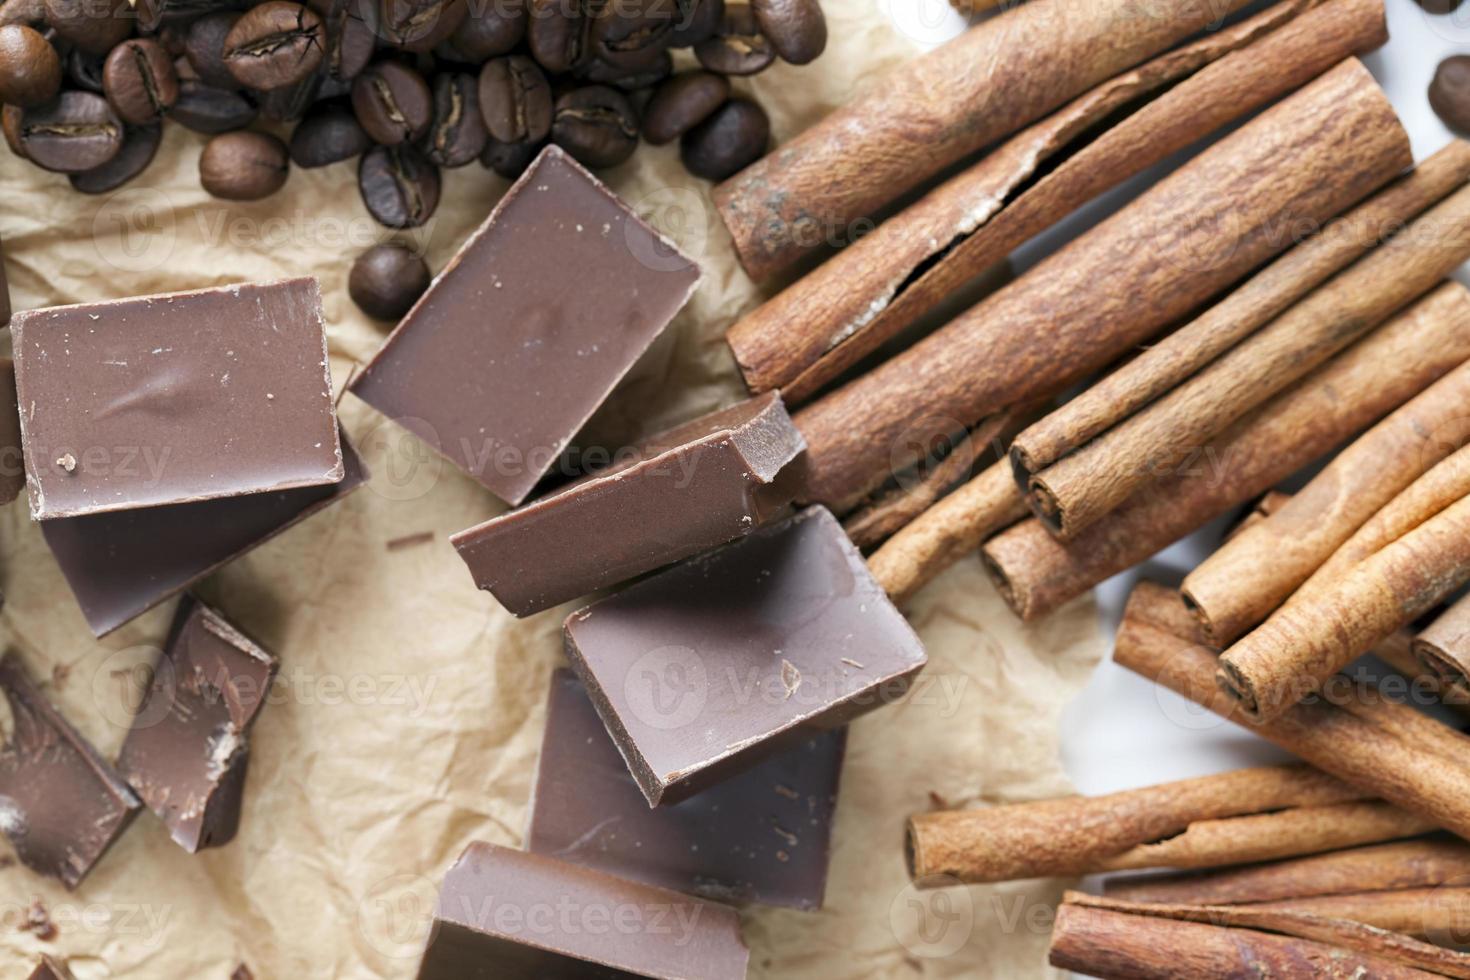 cioccolato a base di zucchero e cacao, pezzi deliziosi foto